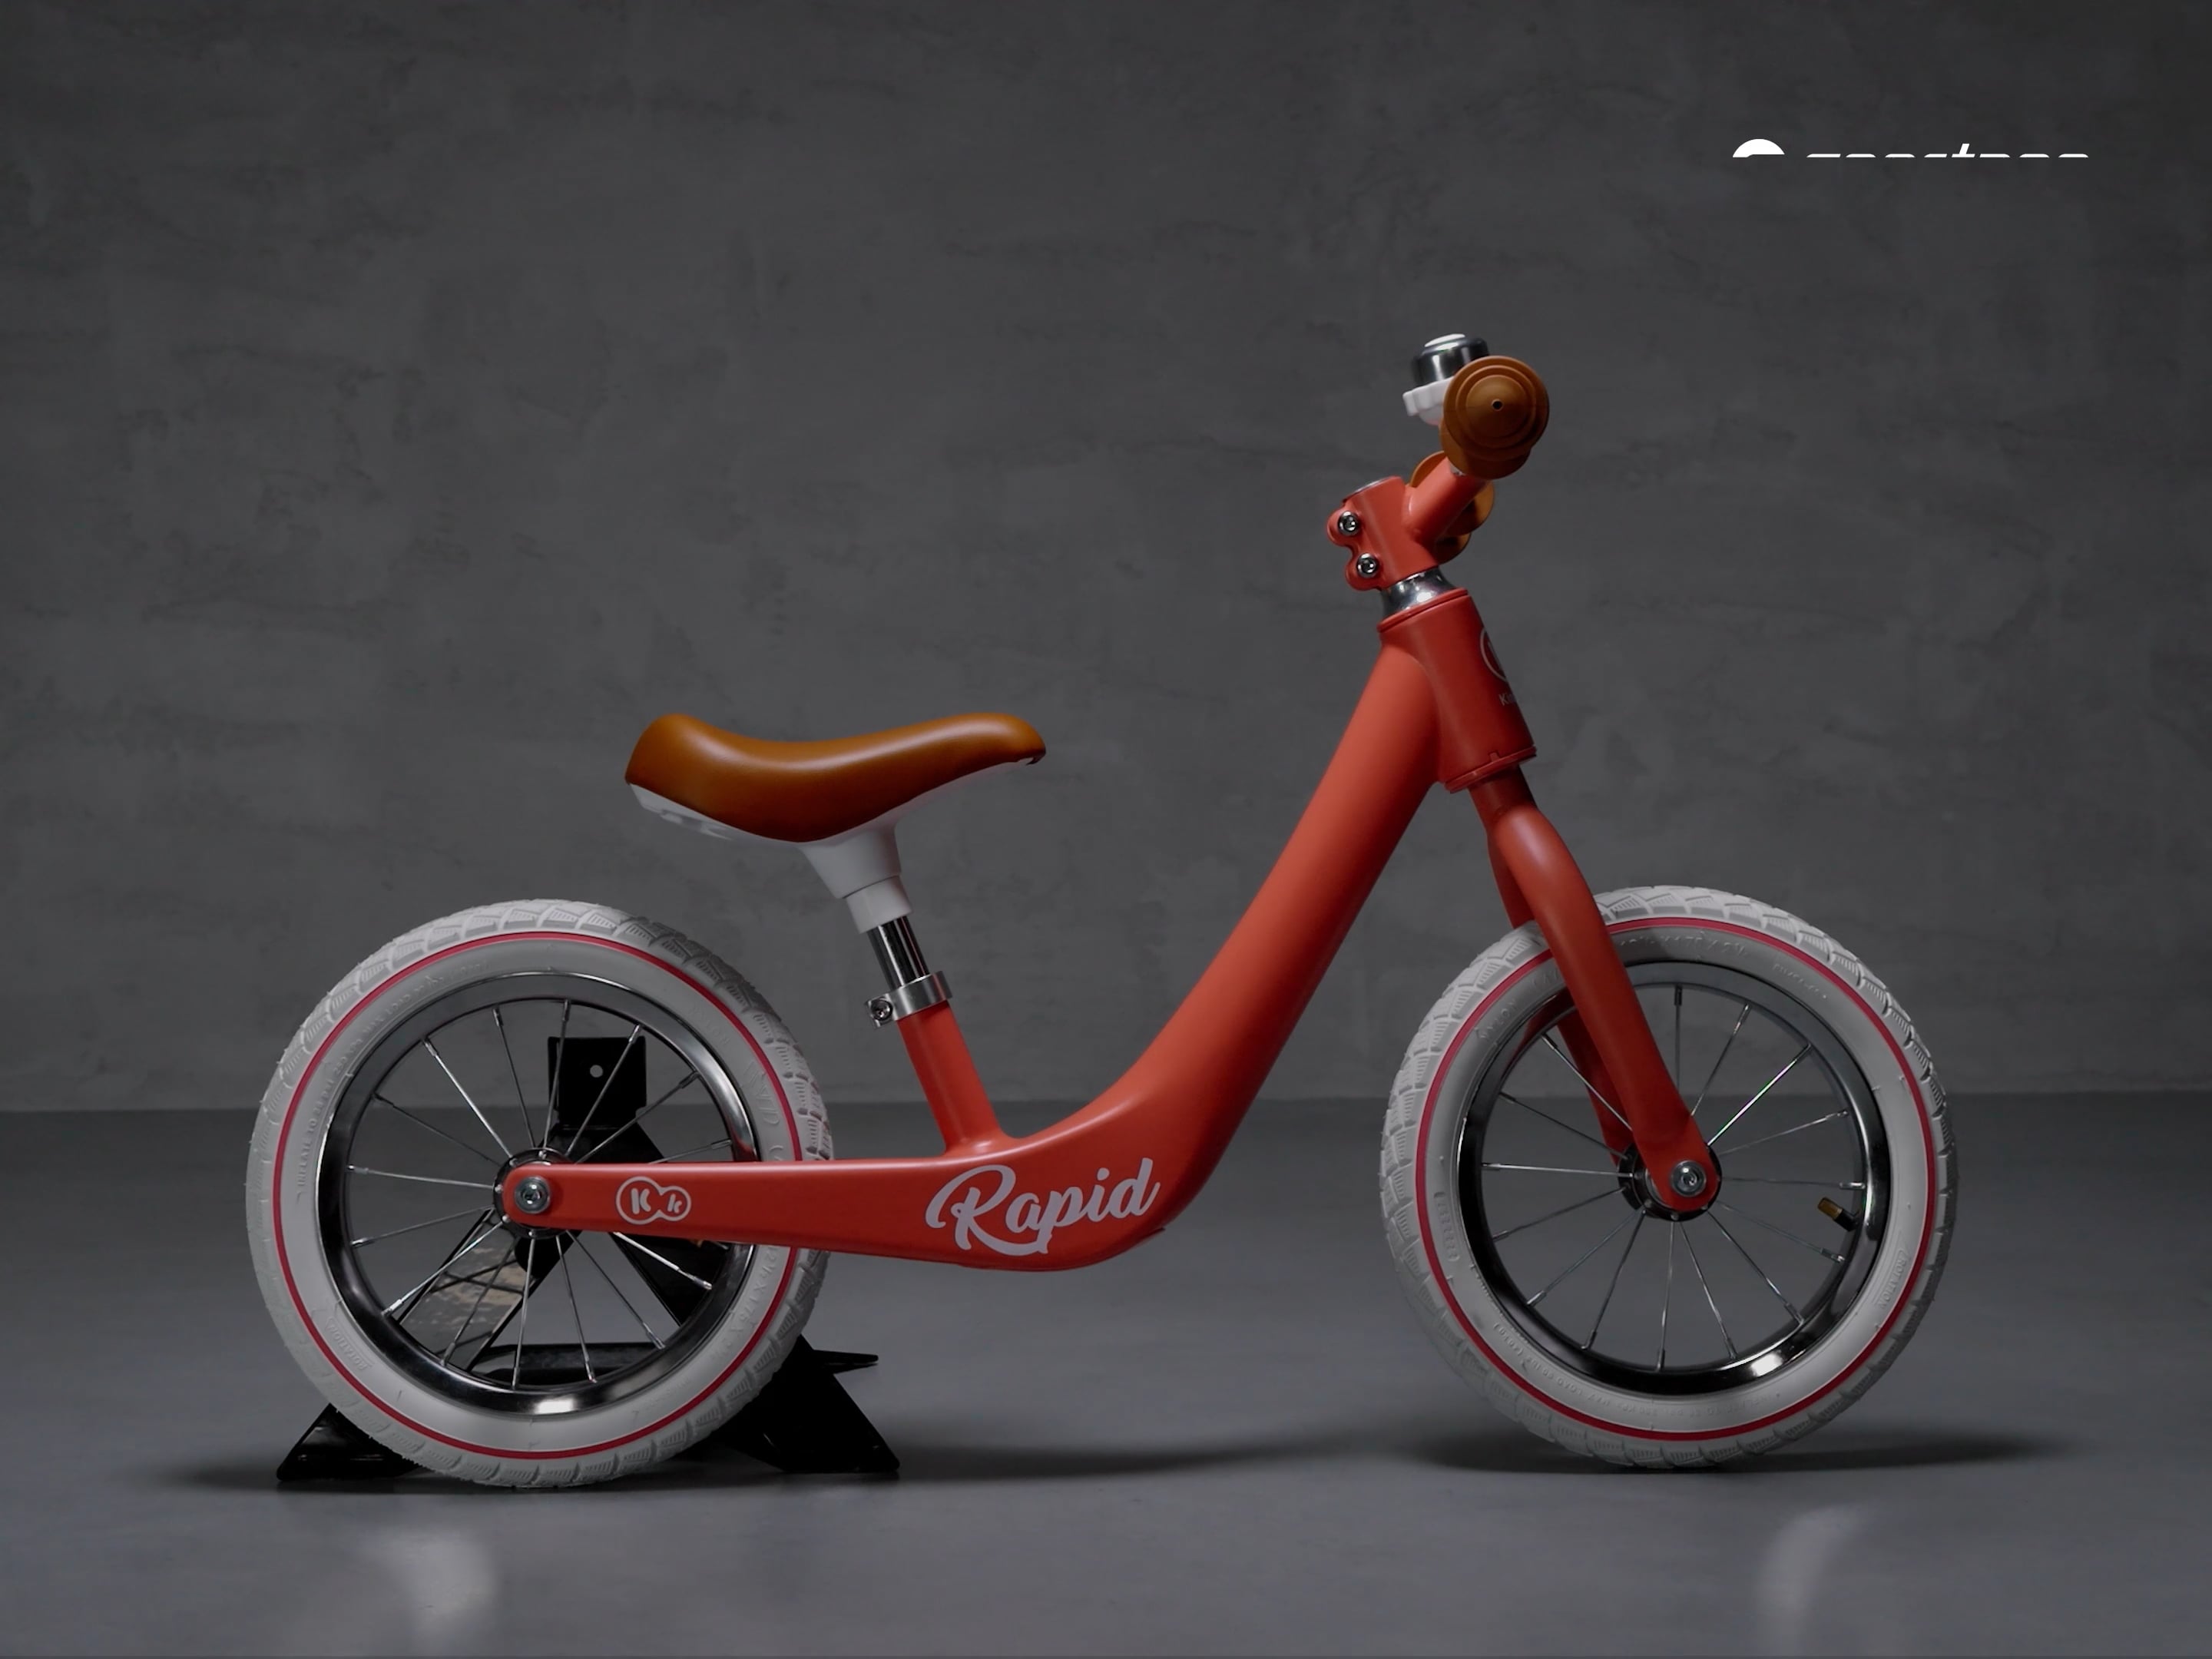 Bicicletă de echilibru Kinderkraft Rapid portocalie KKRRAPICRL0000